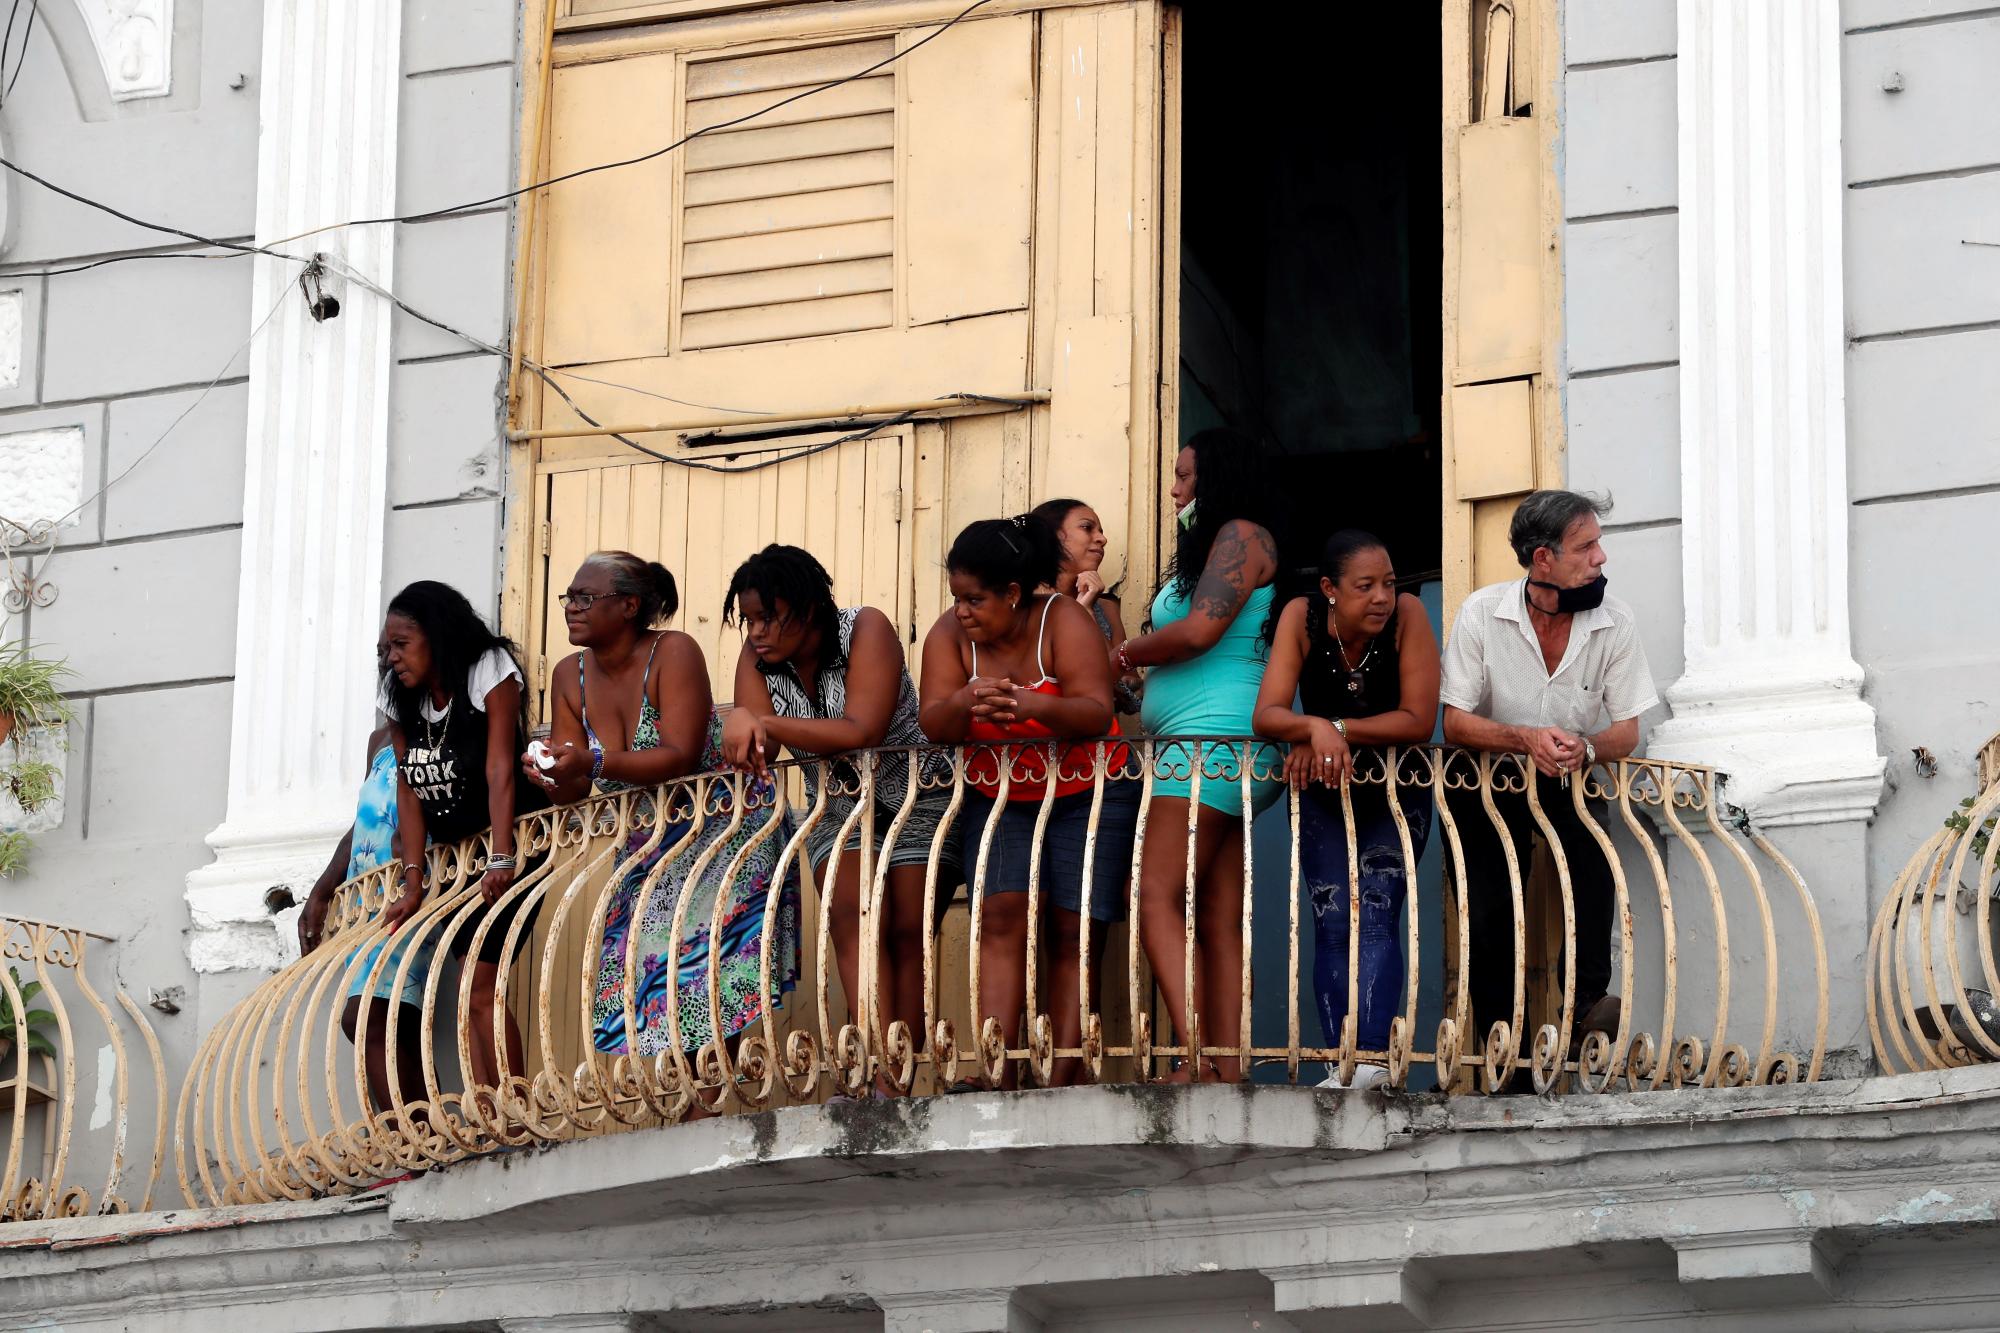 LA HABANA (CUBA), 11/07/2021.- Varias personas observan desde su azotea las manifestaciones hoy, en La Habana (Cuba). Cientos de cubanos salieron este domingo a las calles de La Habana al grito de libertad en manifestaciones pacíficas, que fueron interceptadas por las fuerzas de seguridad y brigadas de partidarios del Gobierno, produciéndose enfrentamientos violentos y arrestos. EFE/Ernesto Mastrascusa